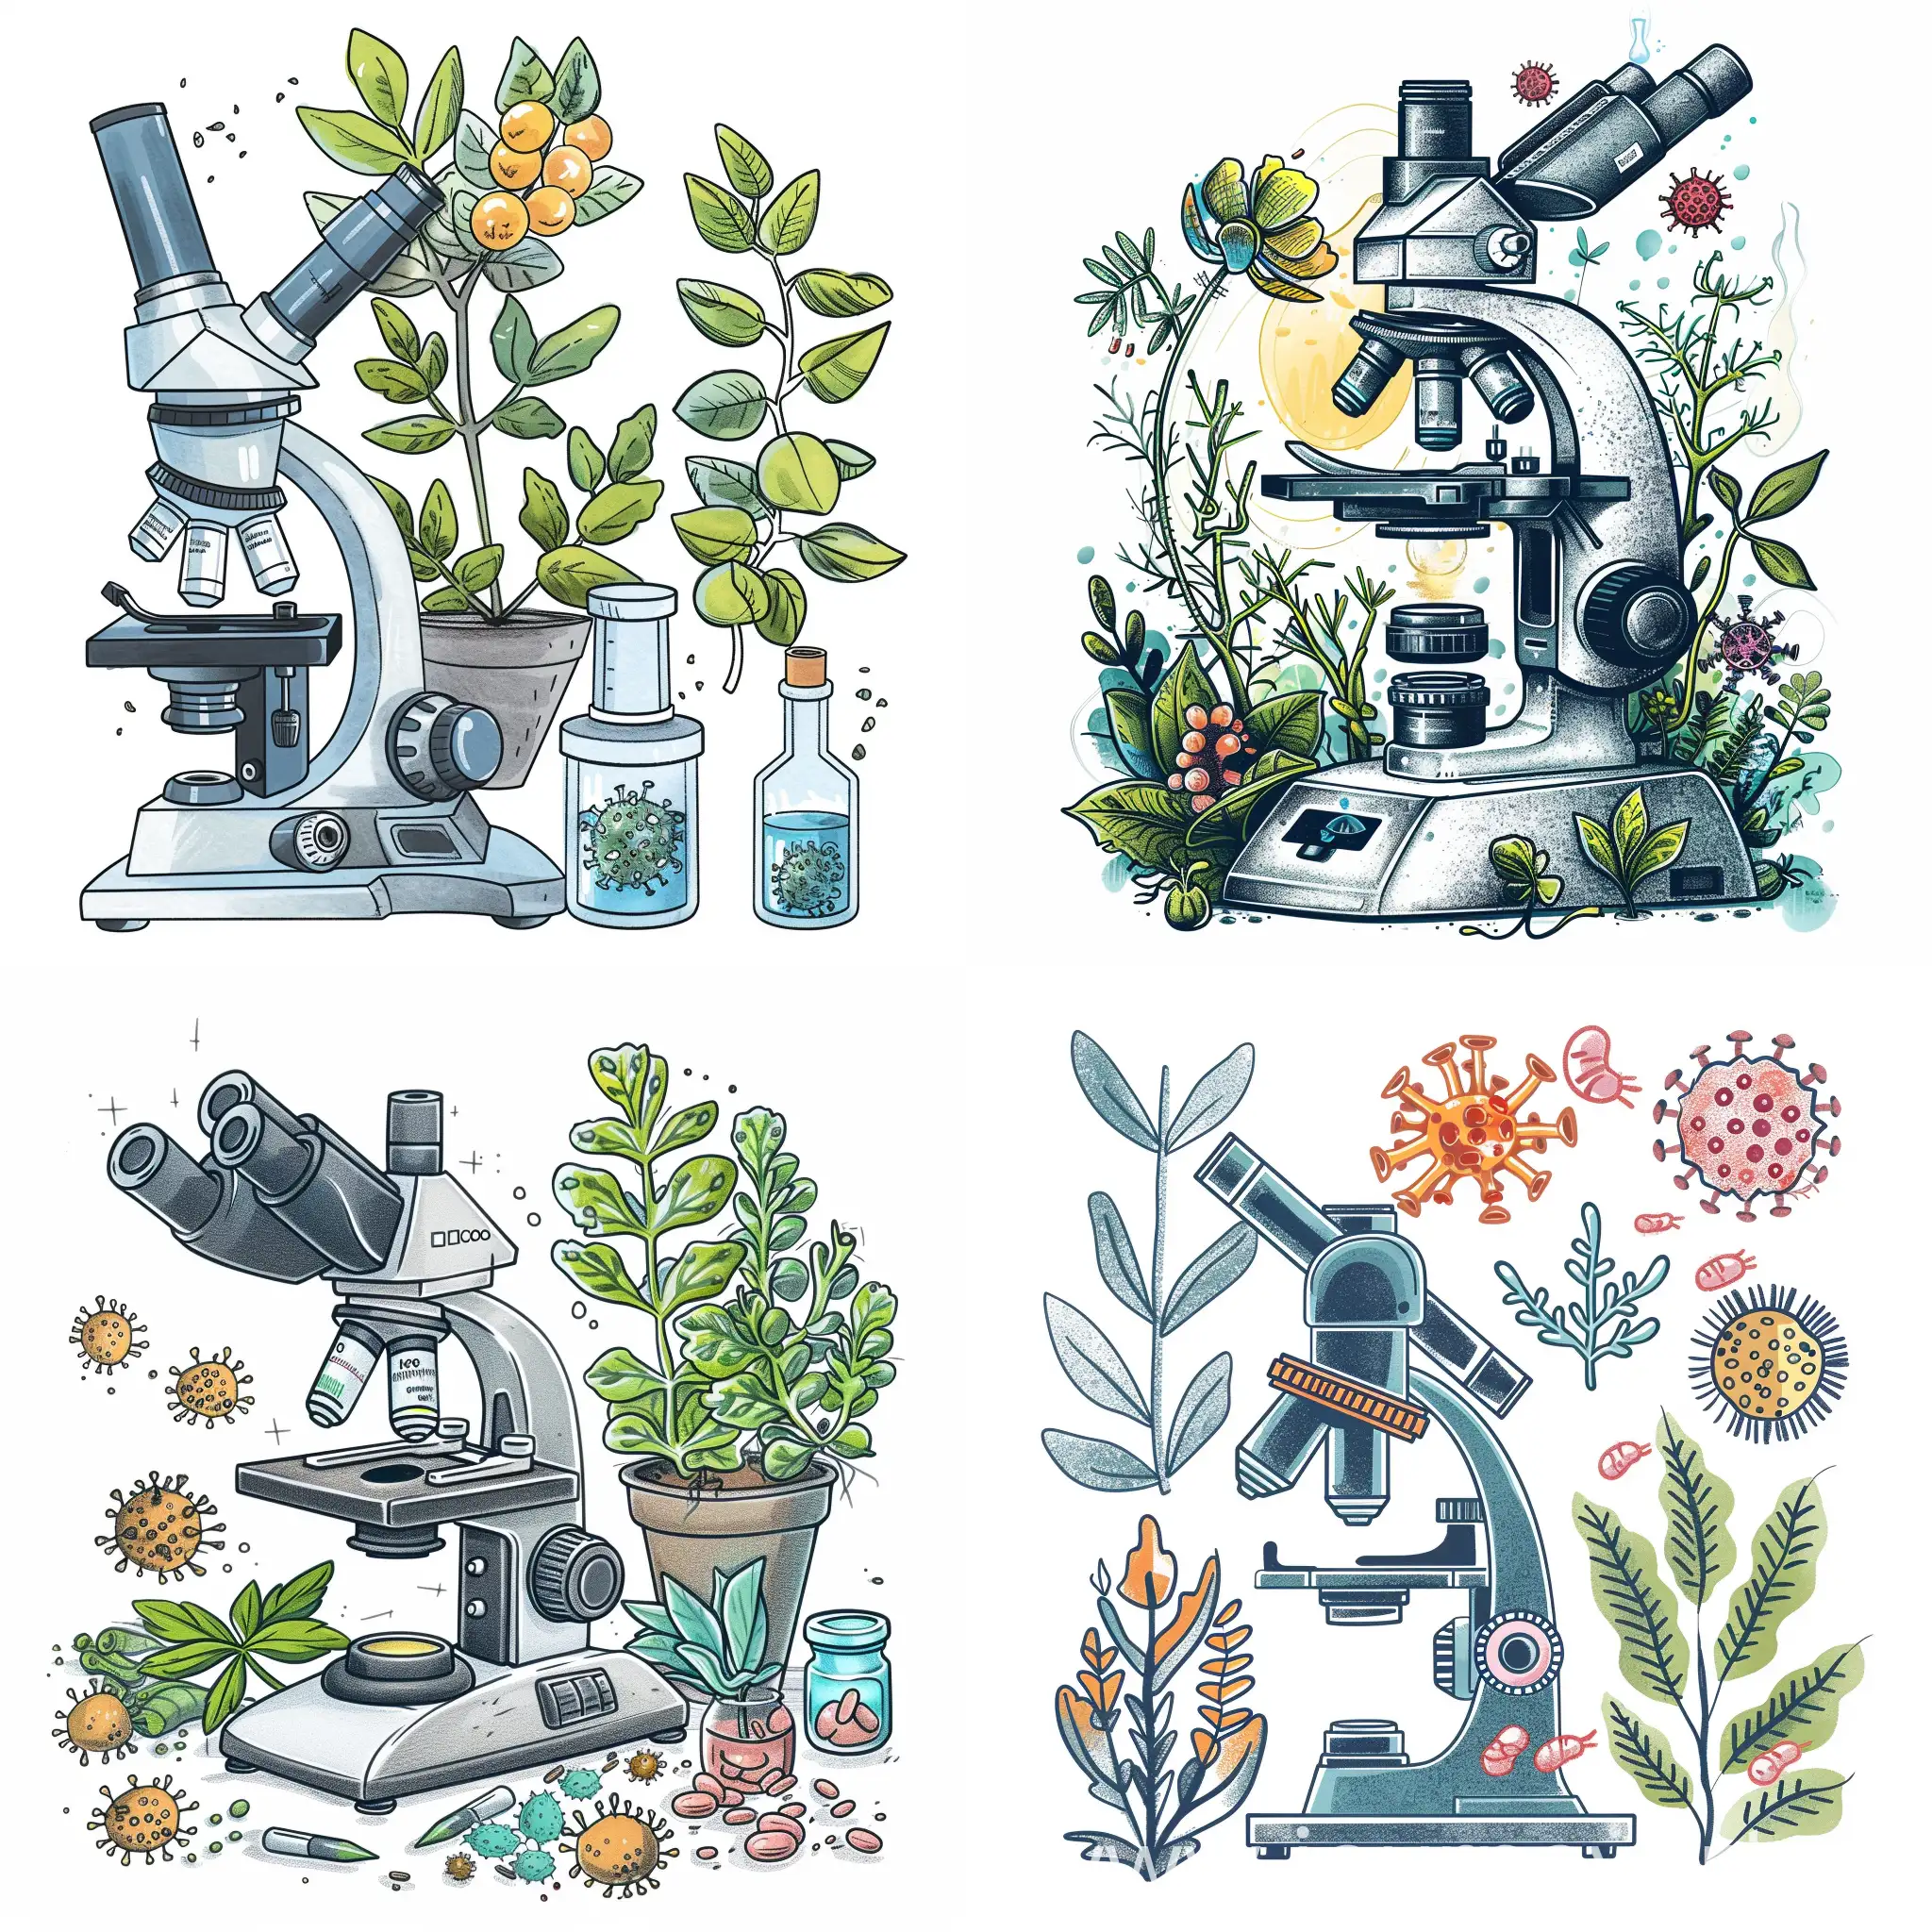 Нарисуй конфокальный микроскоп, растения и вирусы. Используй приятные тона. Не делай картинку страшной 